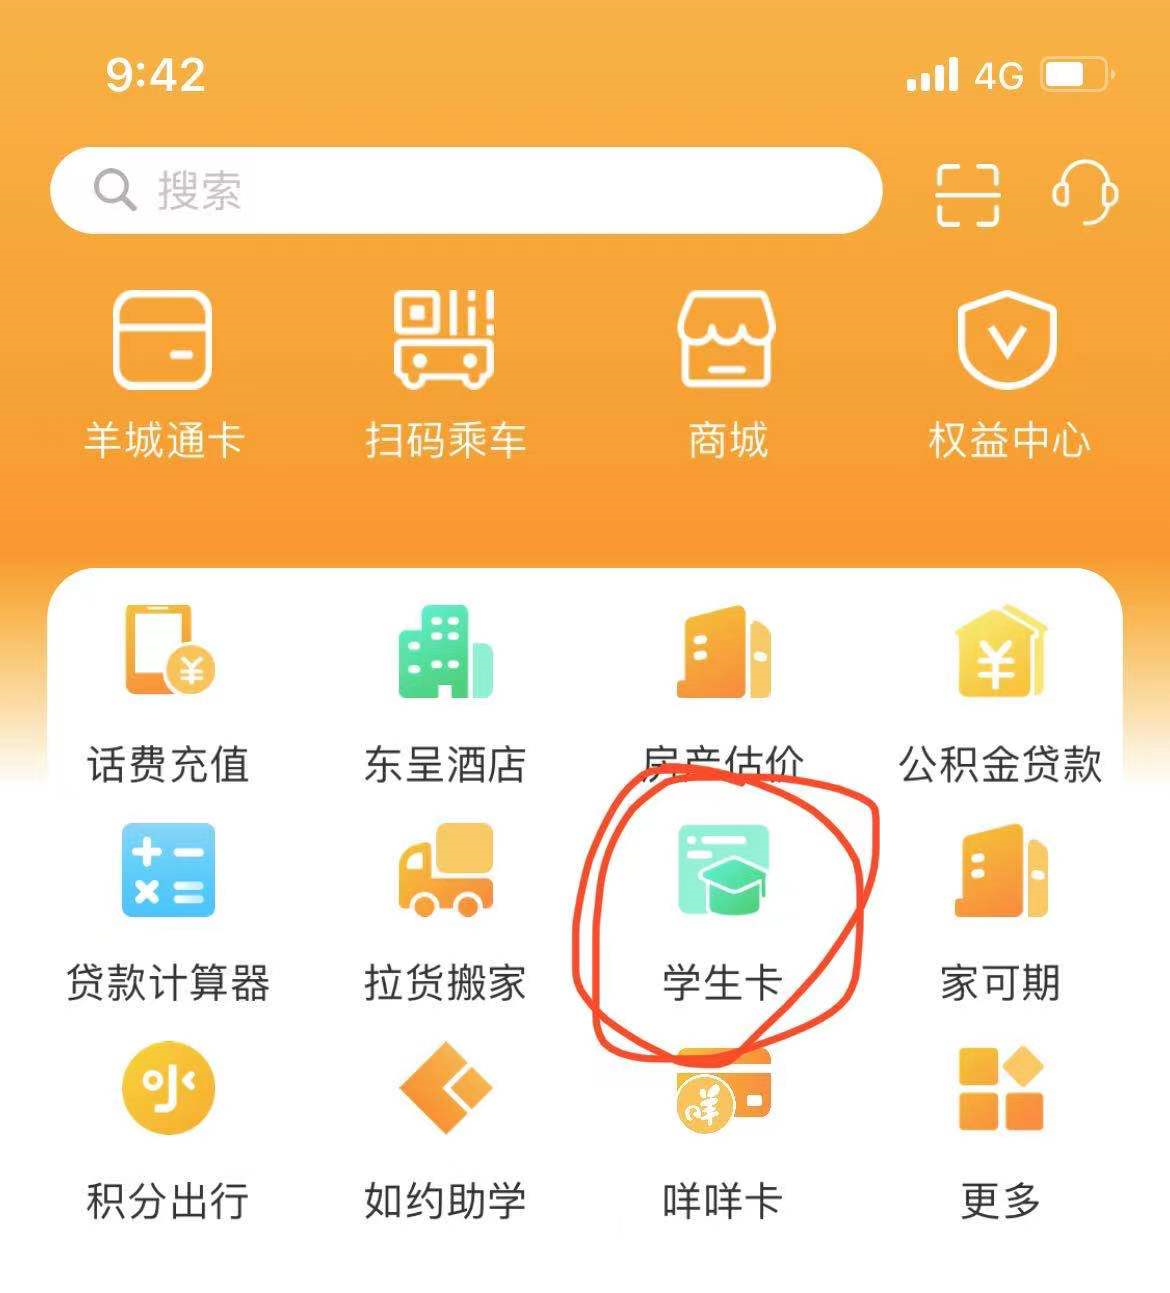 广州羊城通学生卡手机在线申领邮寄到家详细指南